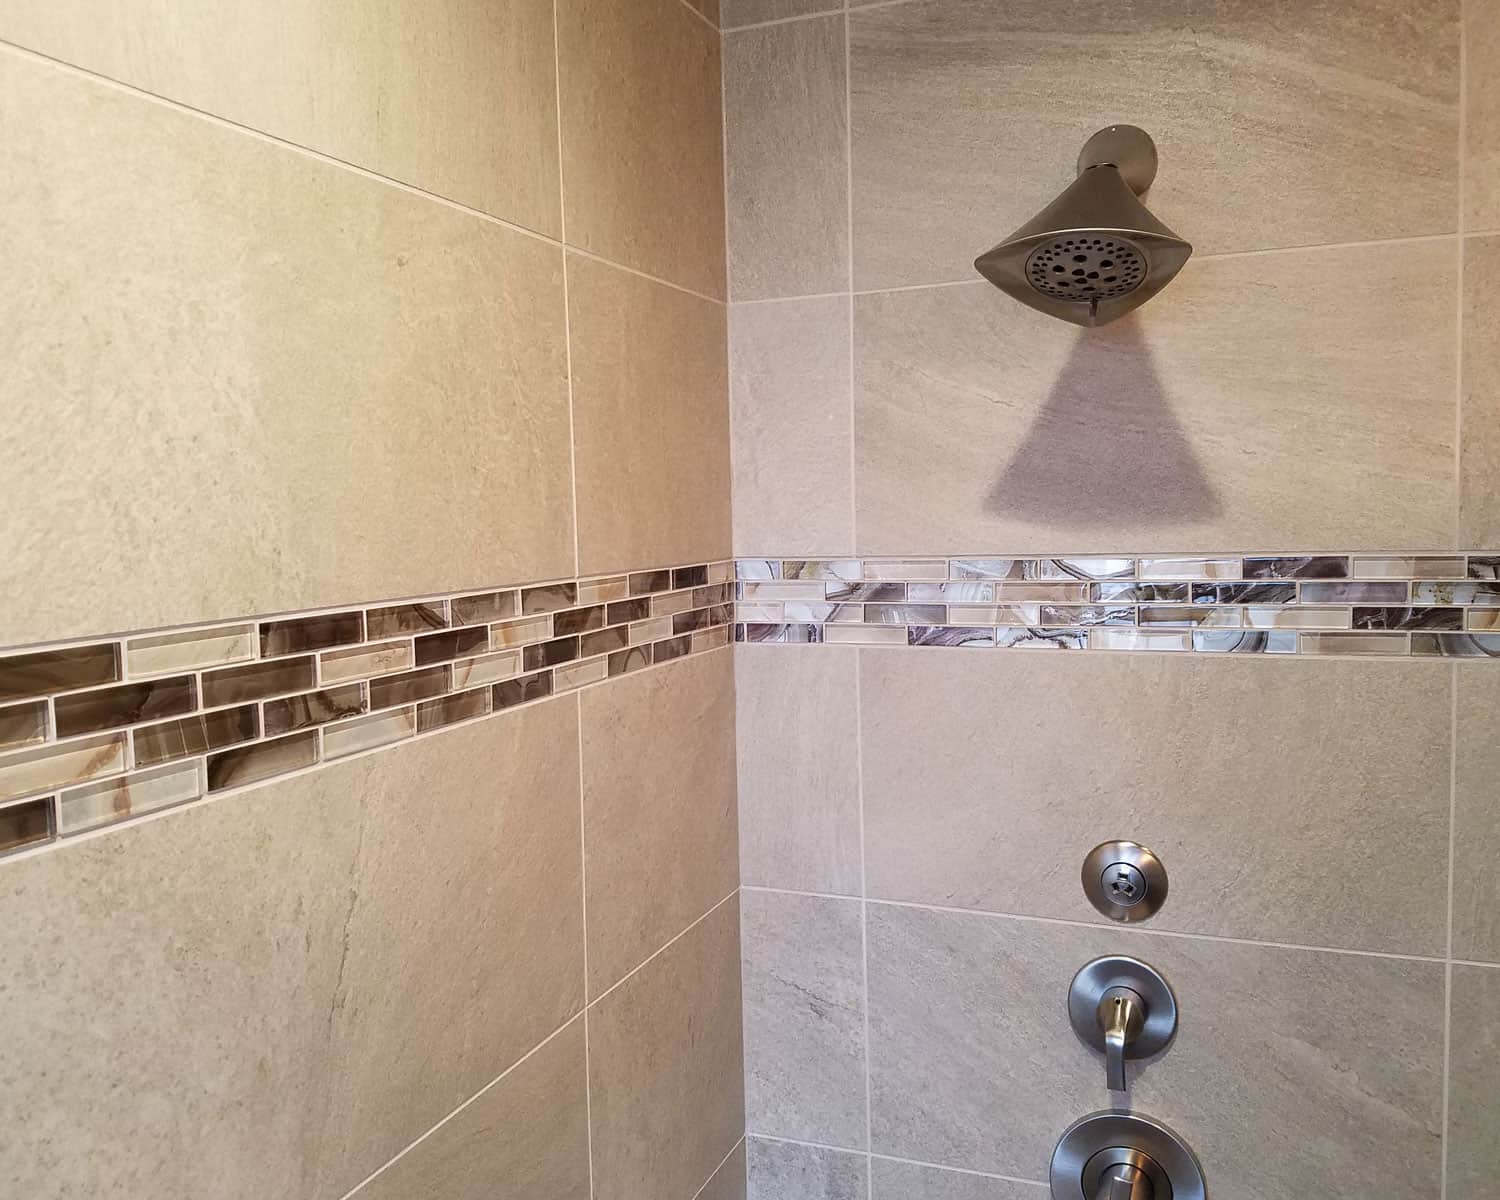 Lemel Homes Remodeling - Bathroom - shower detail with tile work